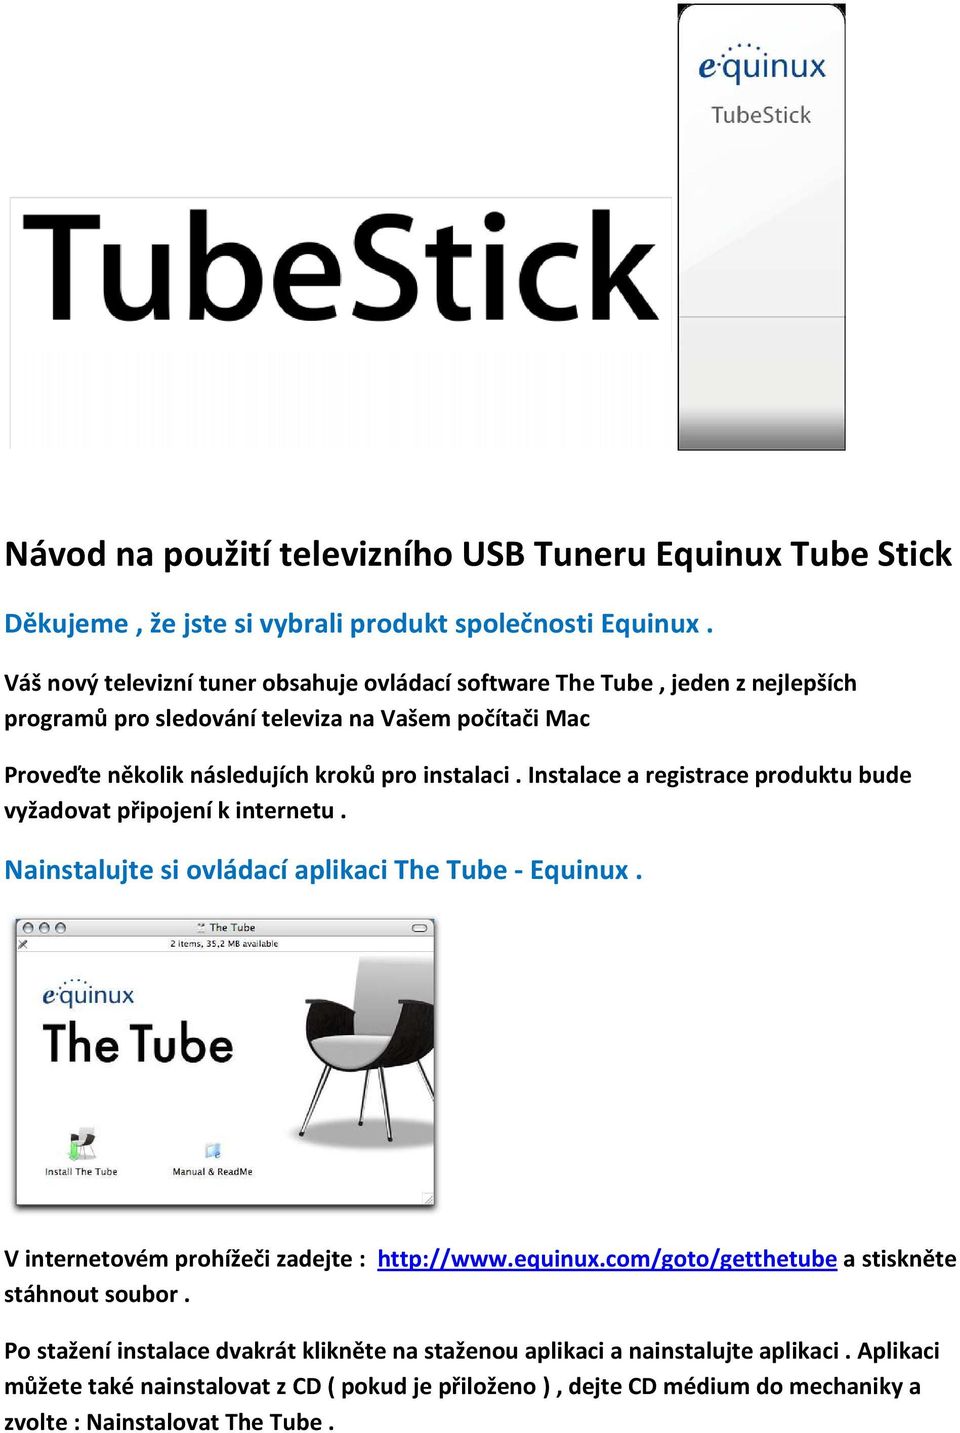 Instalace a registrace produktu bude vyžadovat připojení k internetu. Nainstalujte si ovládací aplikaci The Tube - Equinux. V internetovém prohížeči zadejte : http://www.equinux.